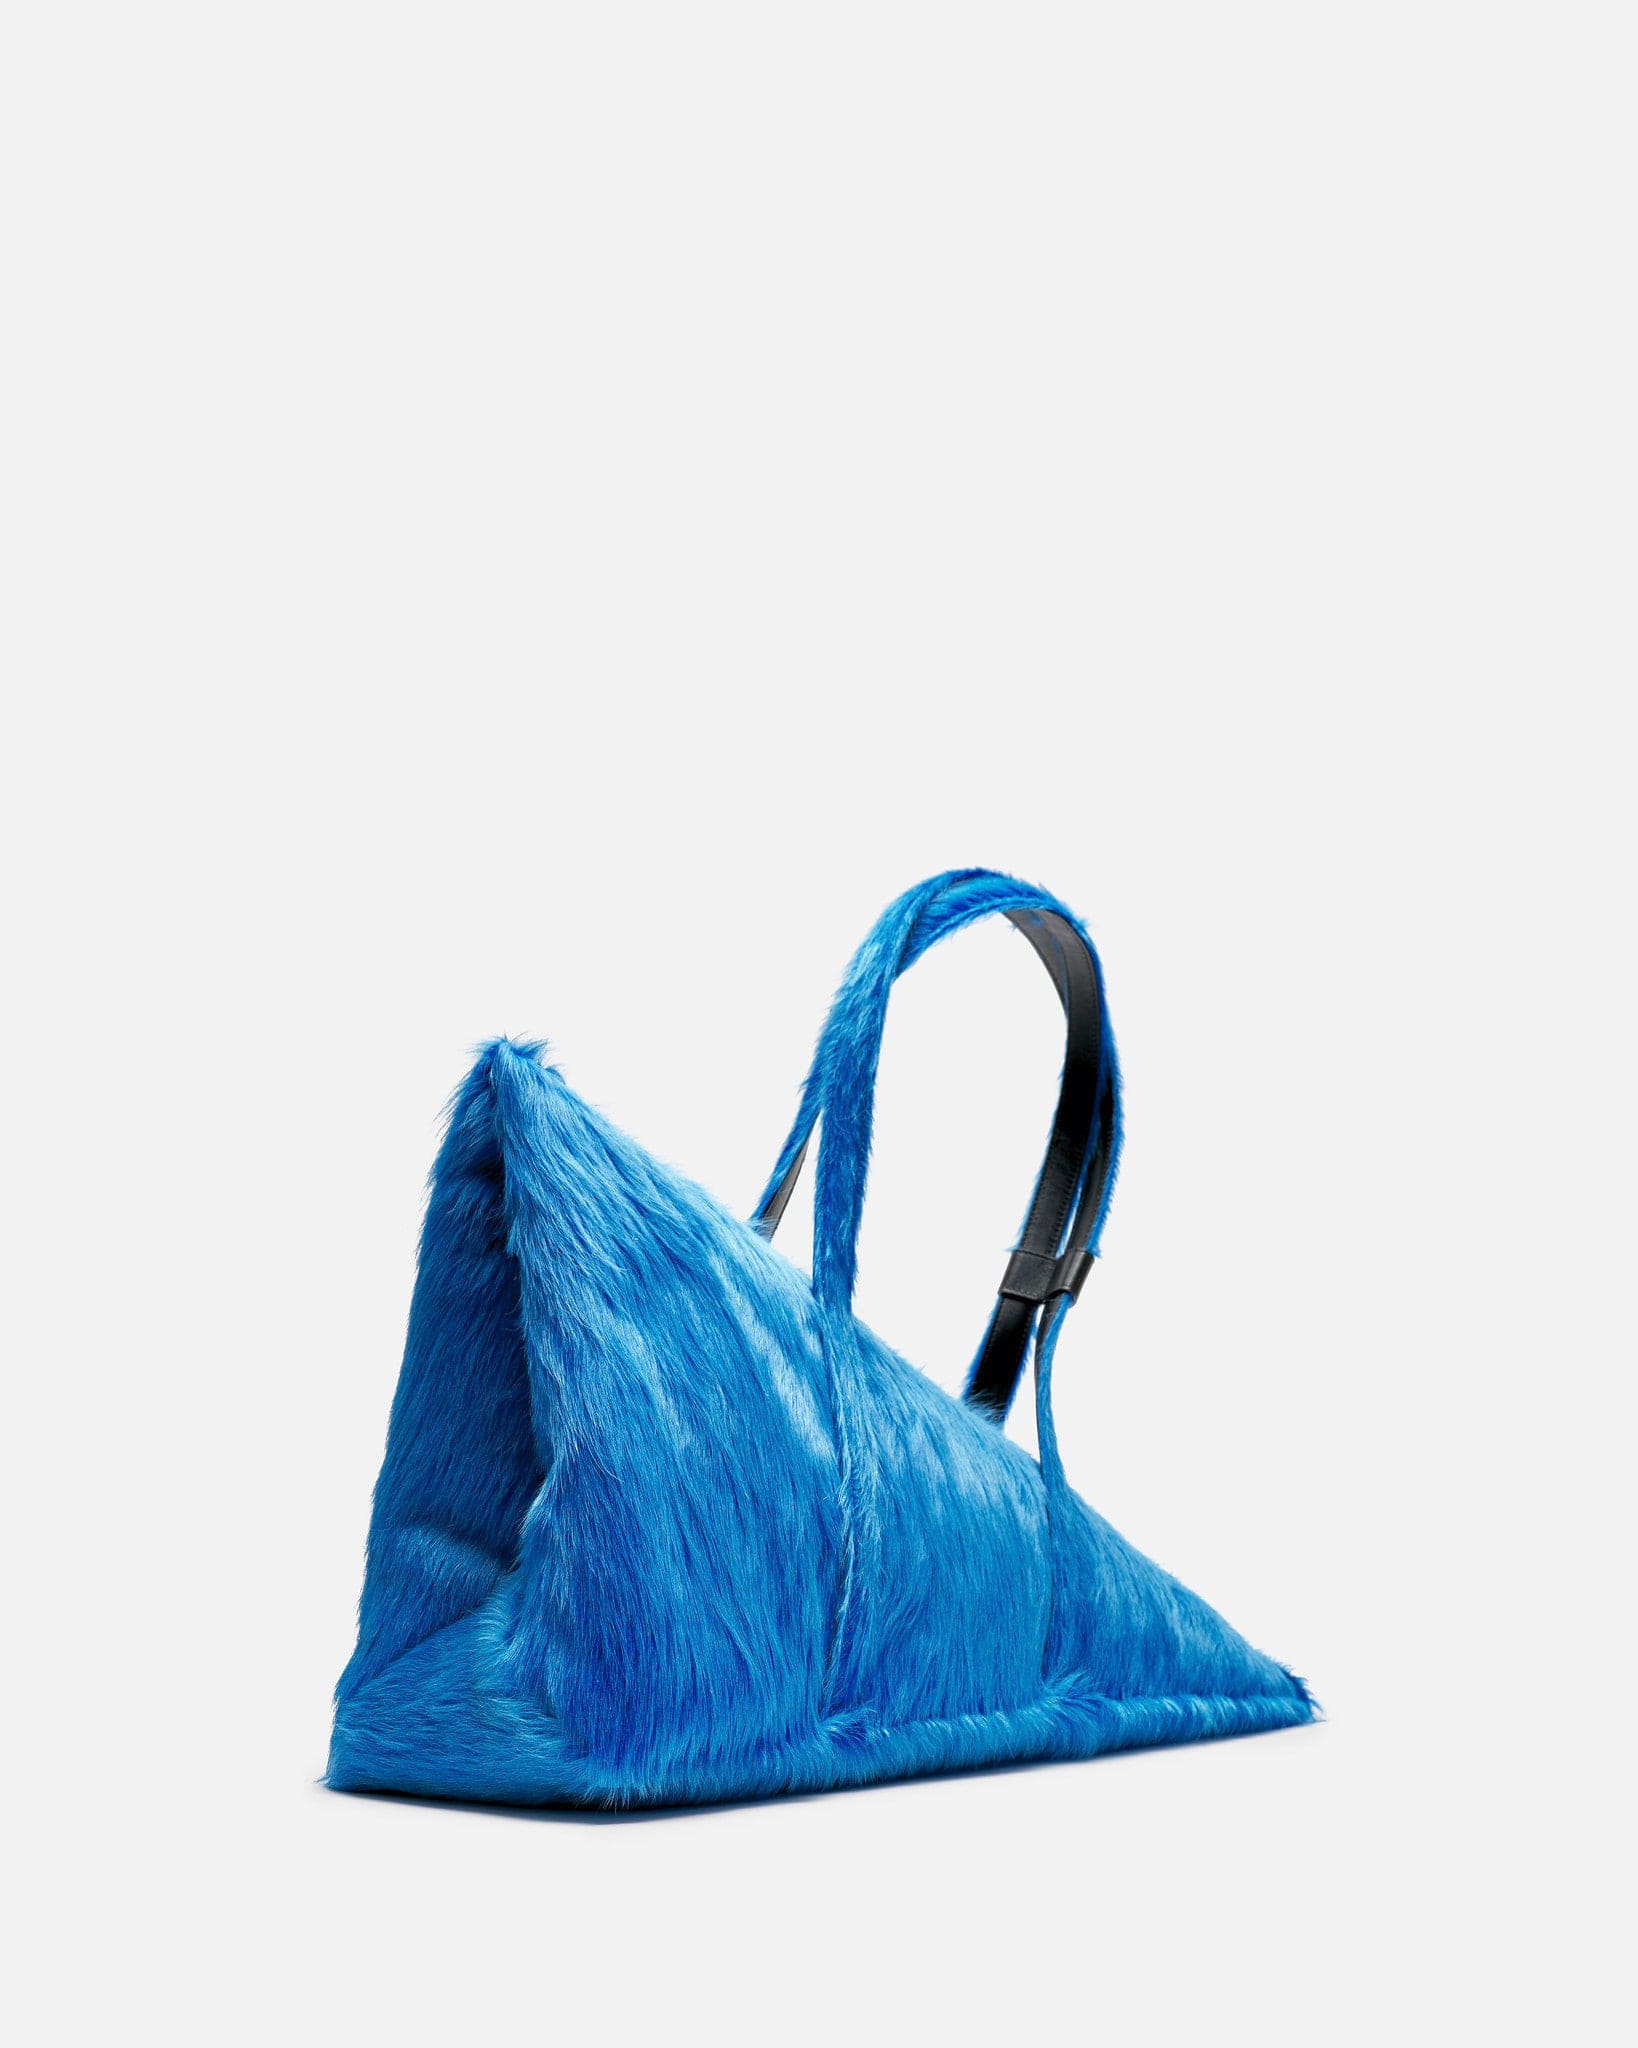 Marni Men's Bags O/S Long Calf Hair Prisma Duffle Bag in Royal